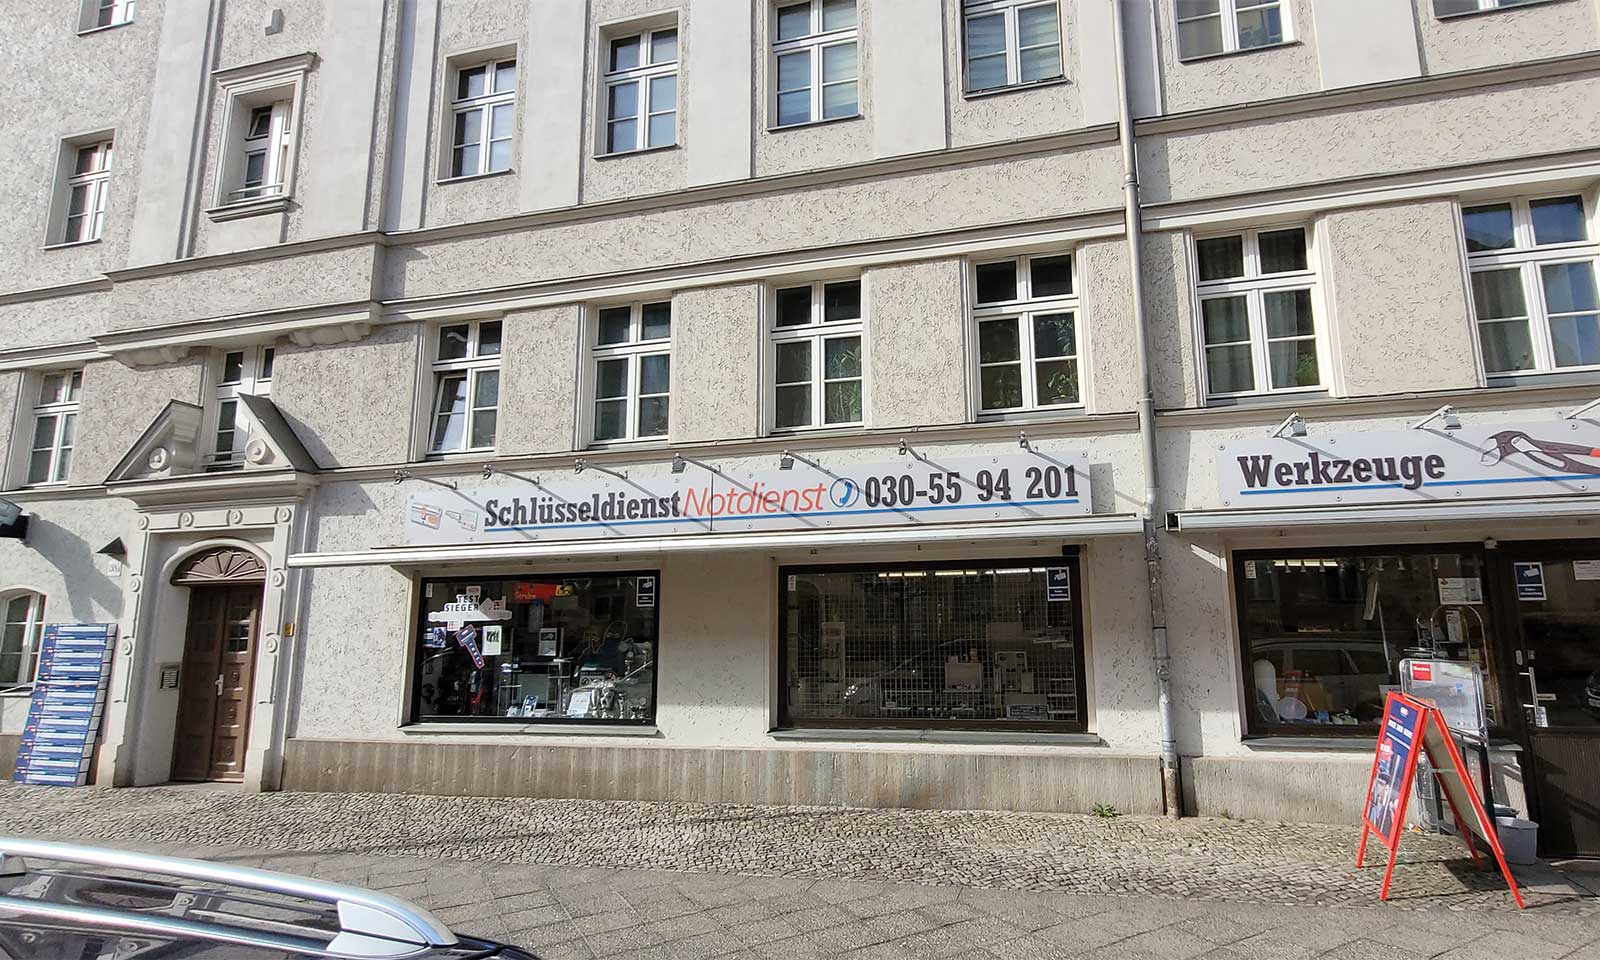 Workshop Strauch - Schlüsseldienst Berlin seit 1978